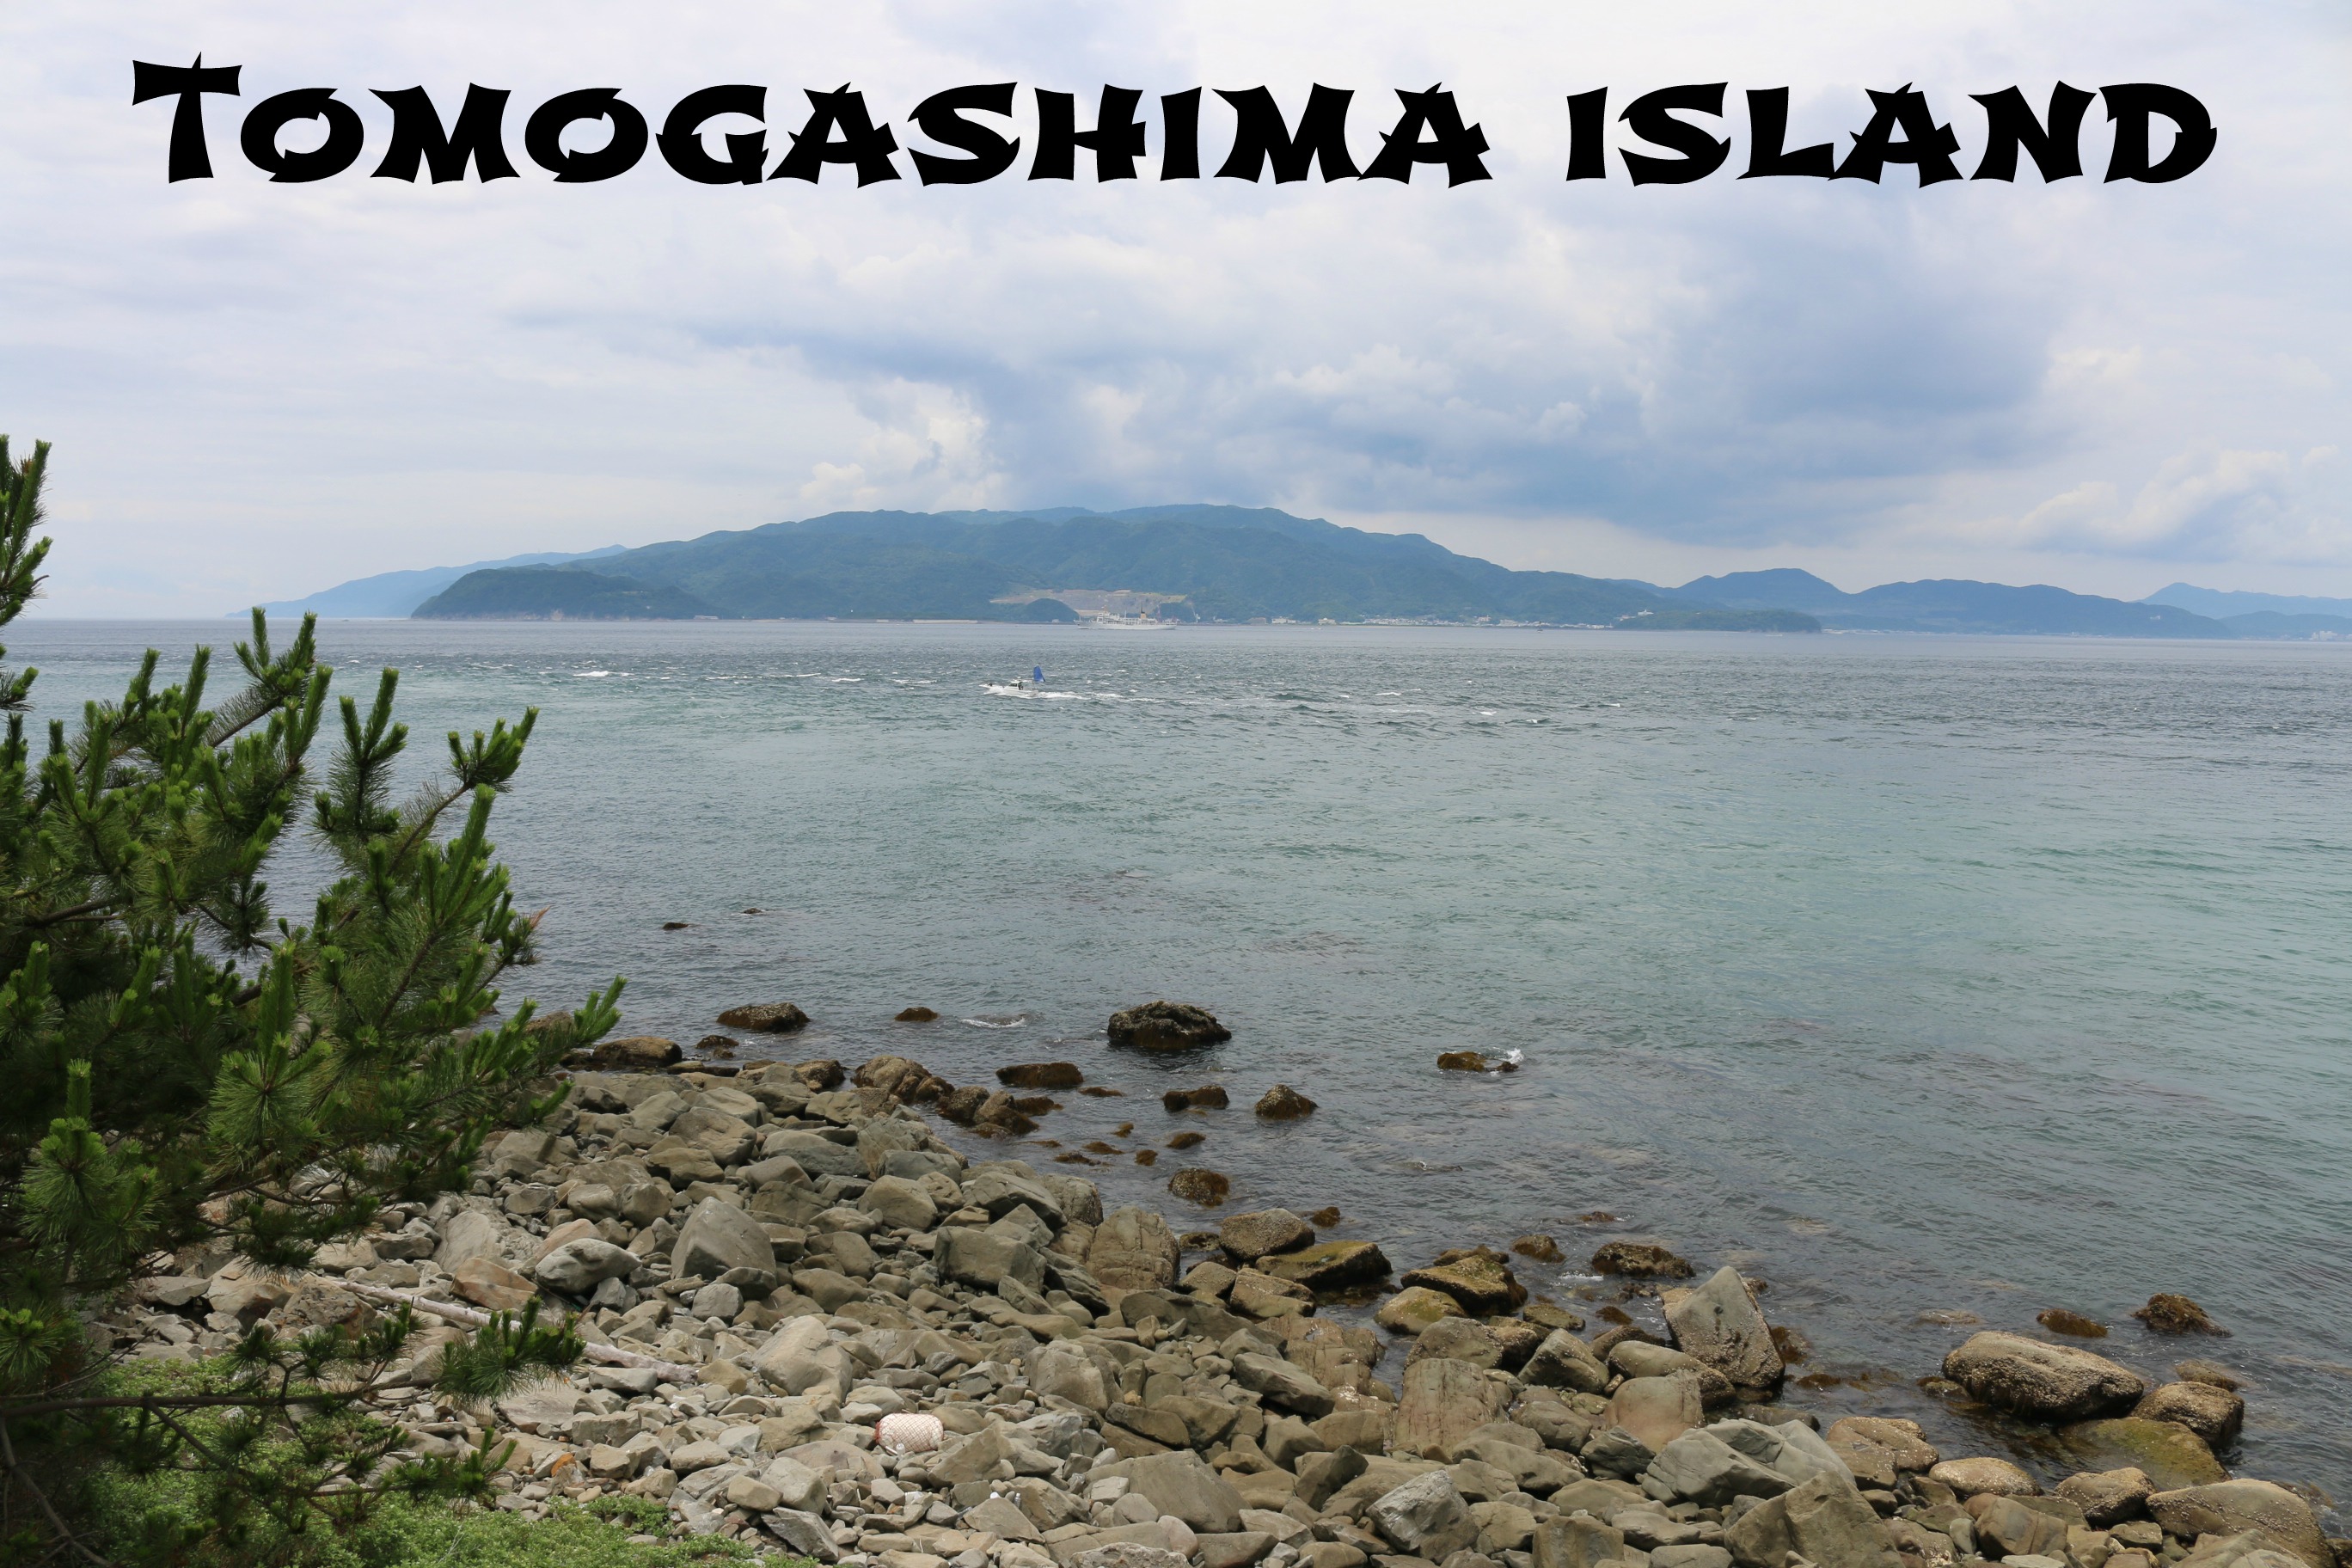 TomogashimaIsland